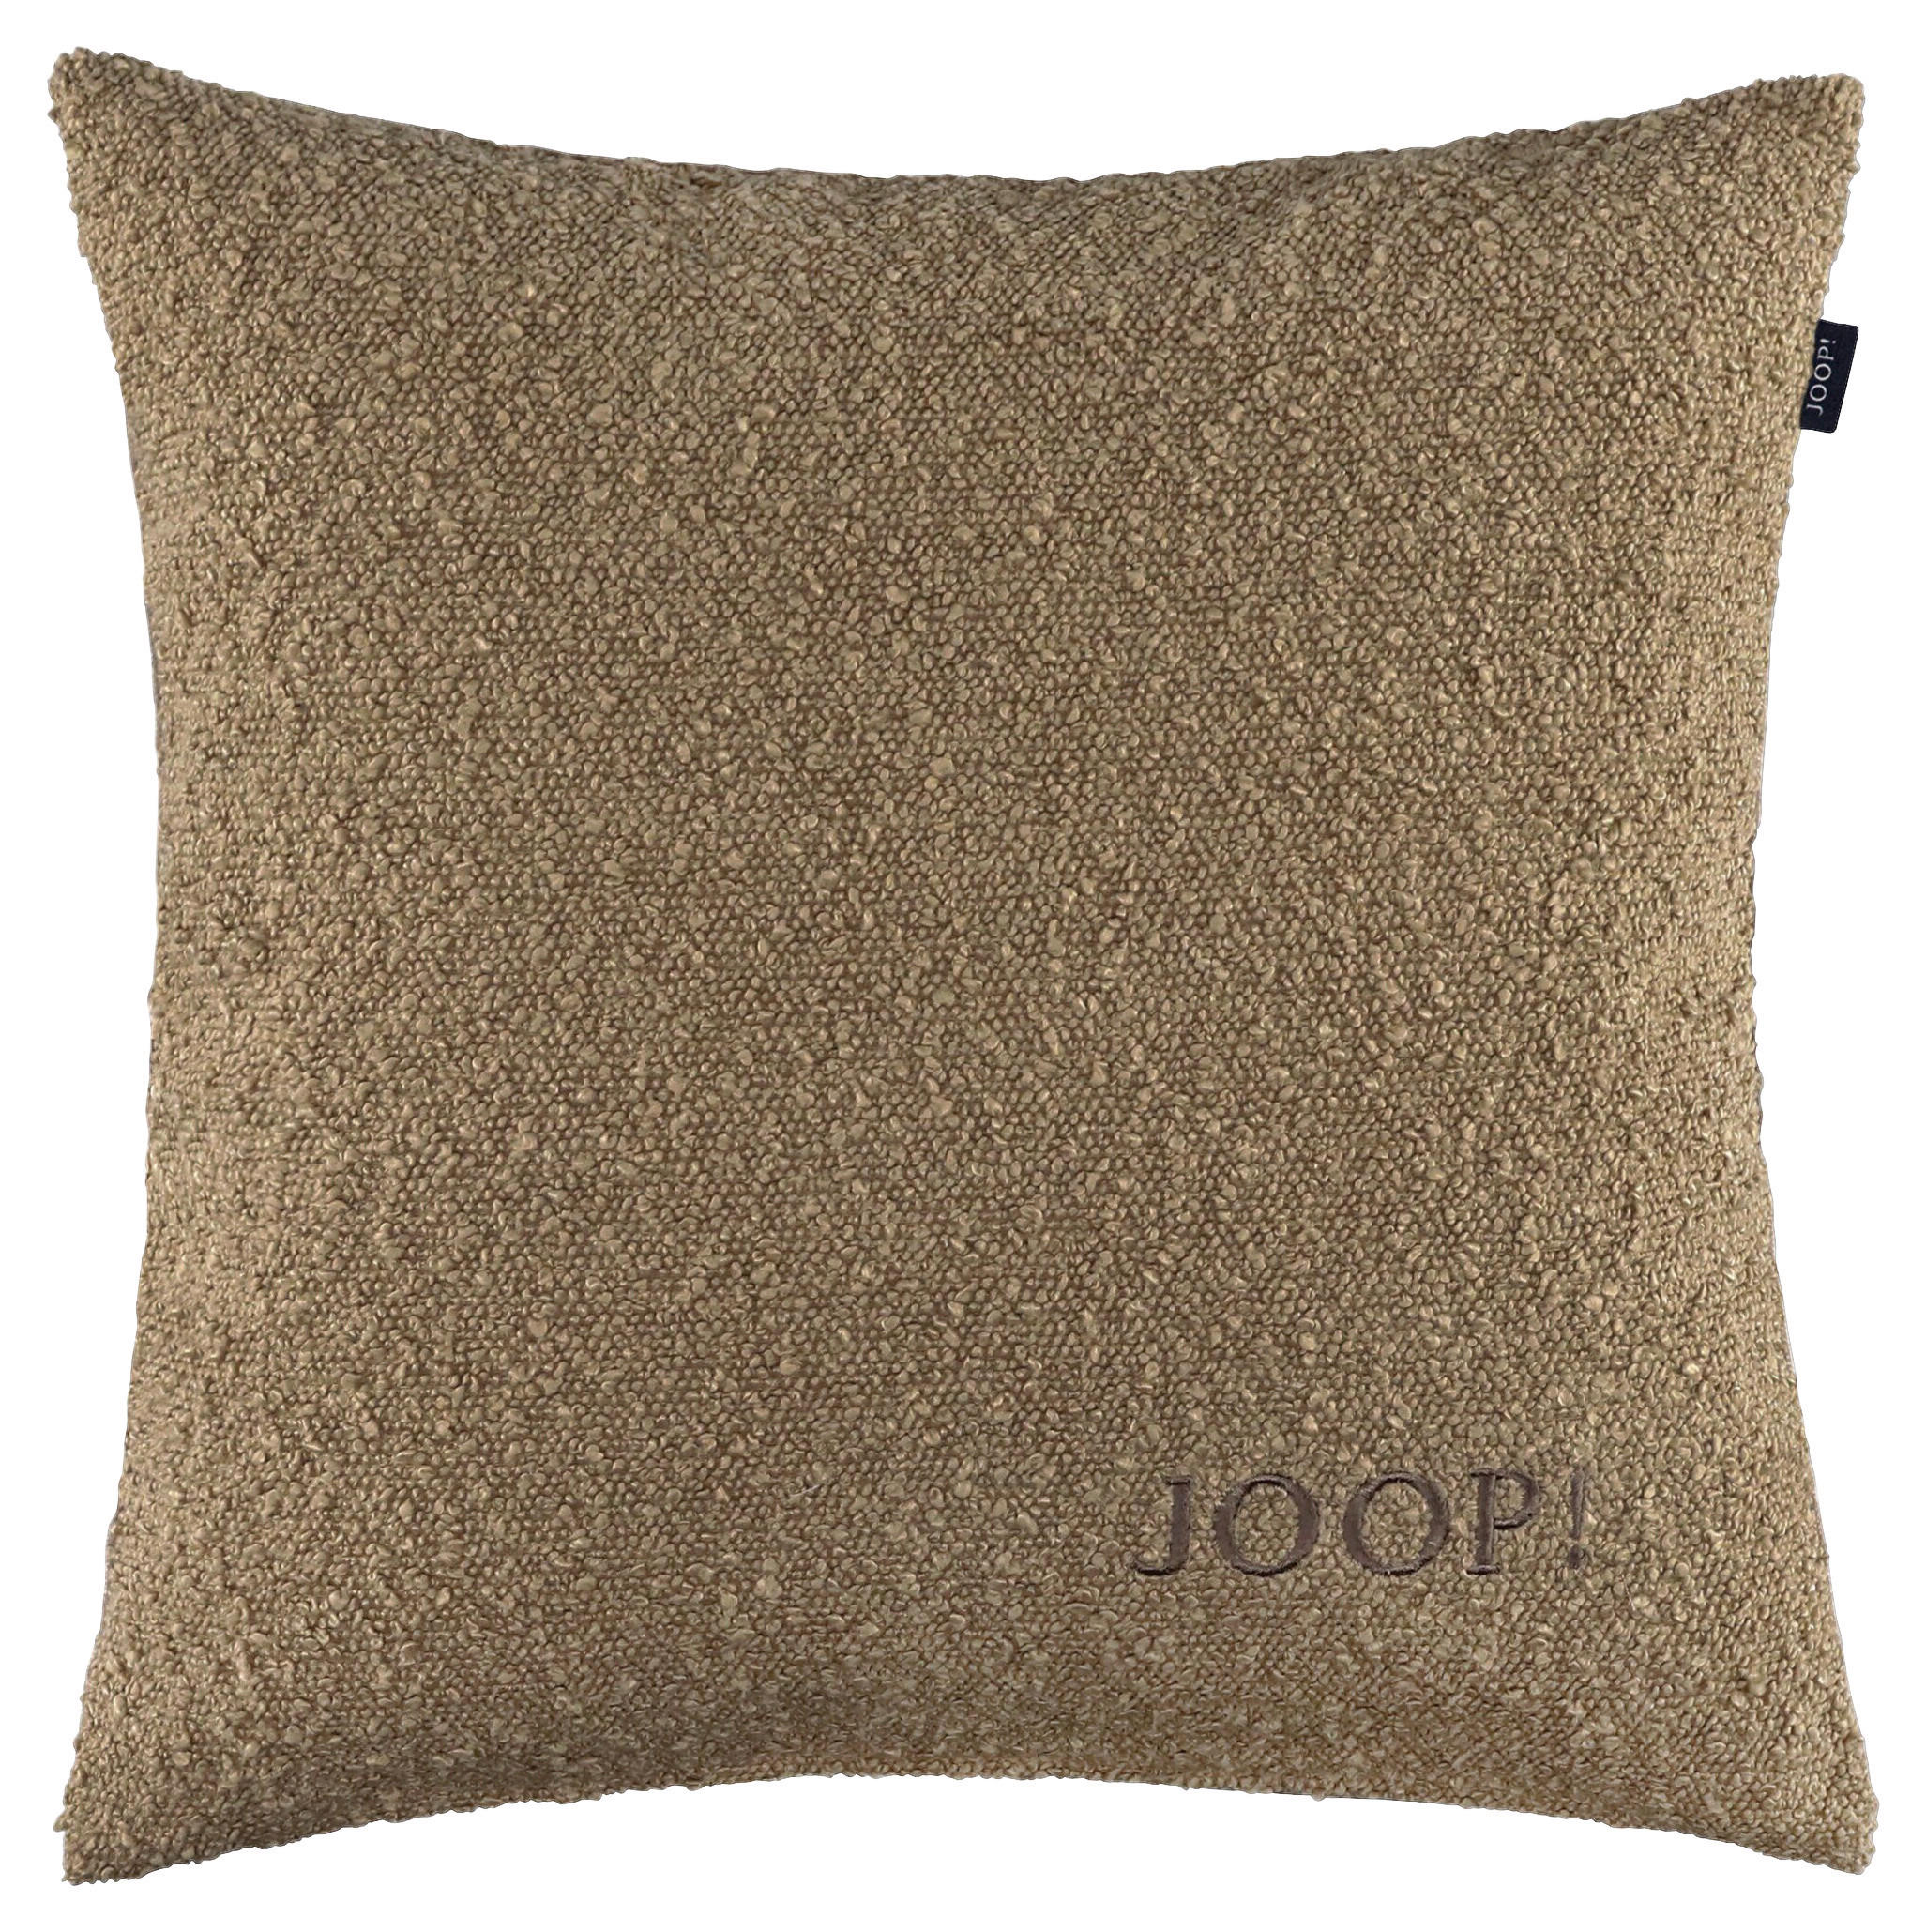 KISSENHÜLLE J! TOUCH 40/40 cm  - Sandfarben, Design, Textil (40/40cm) - Joop!